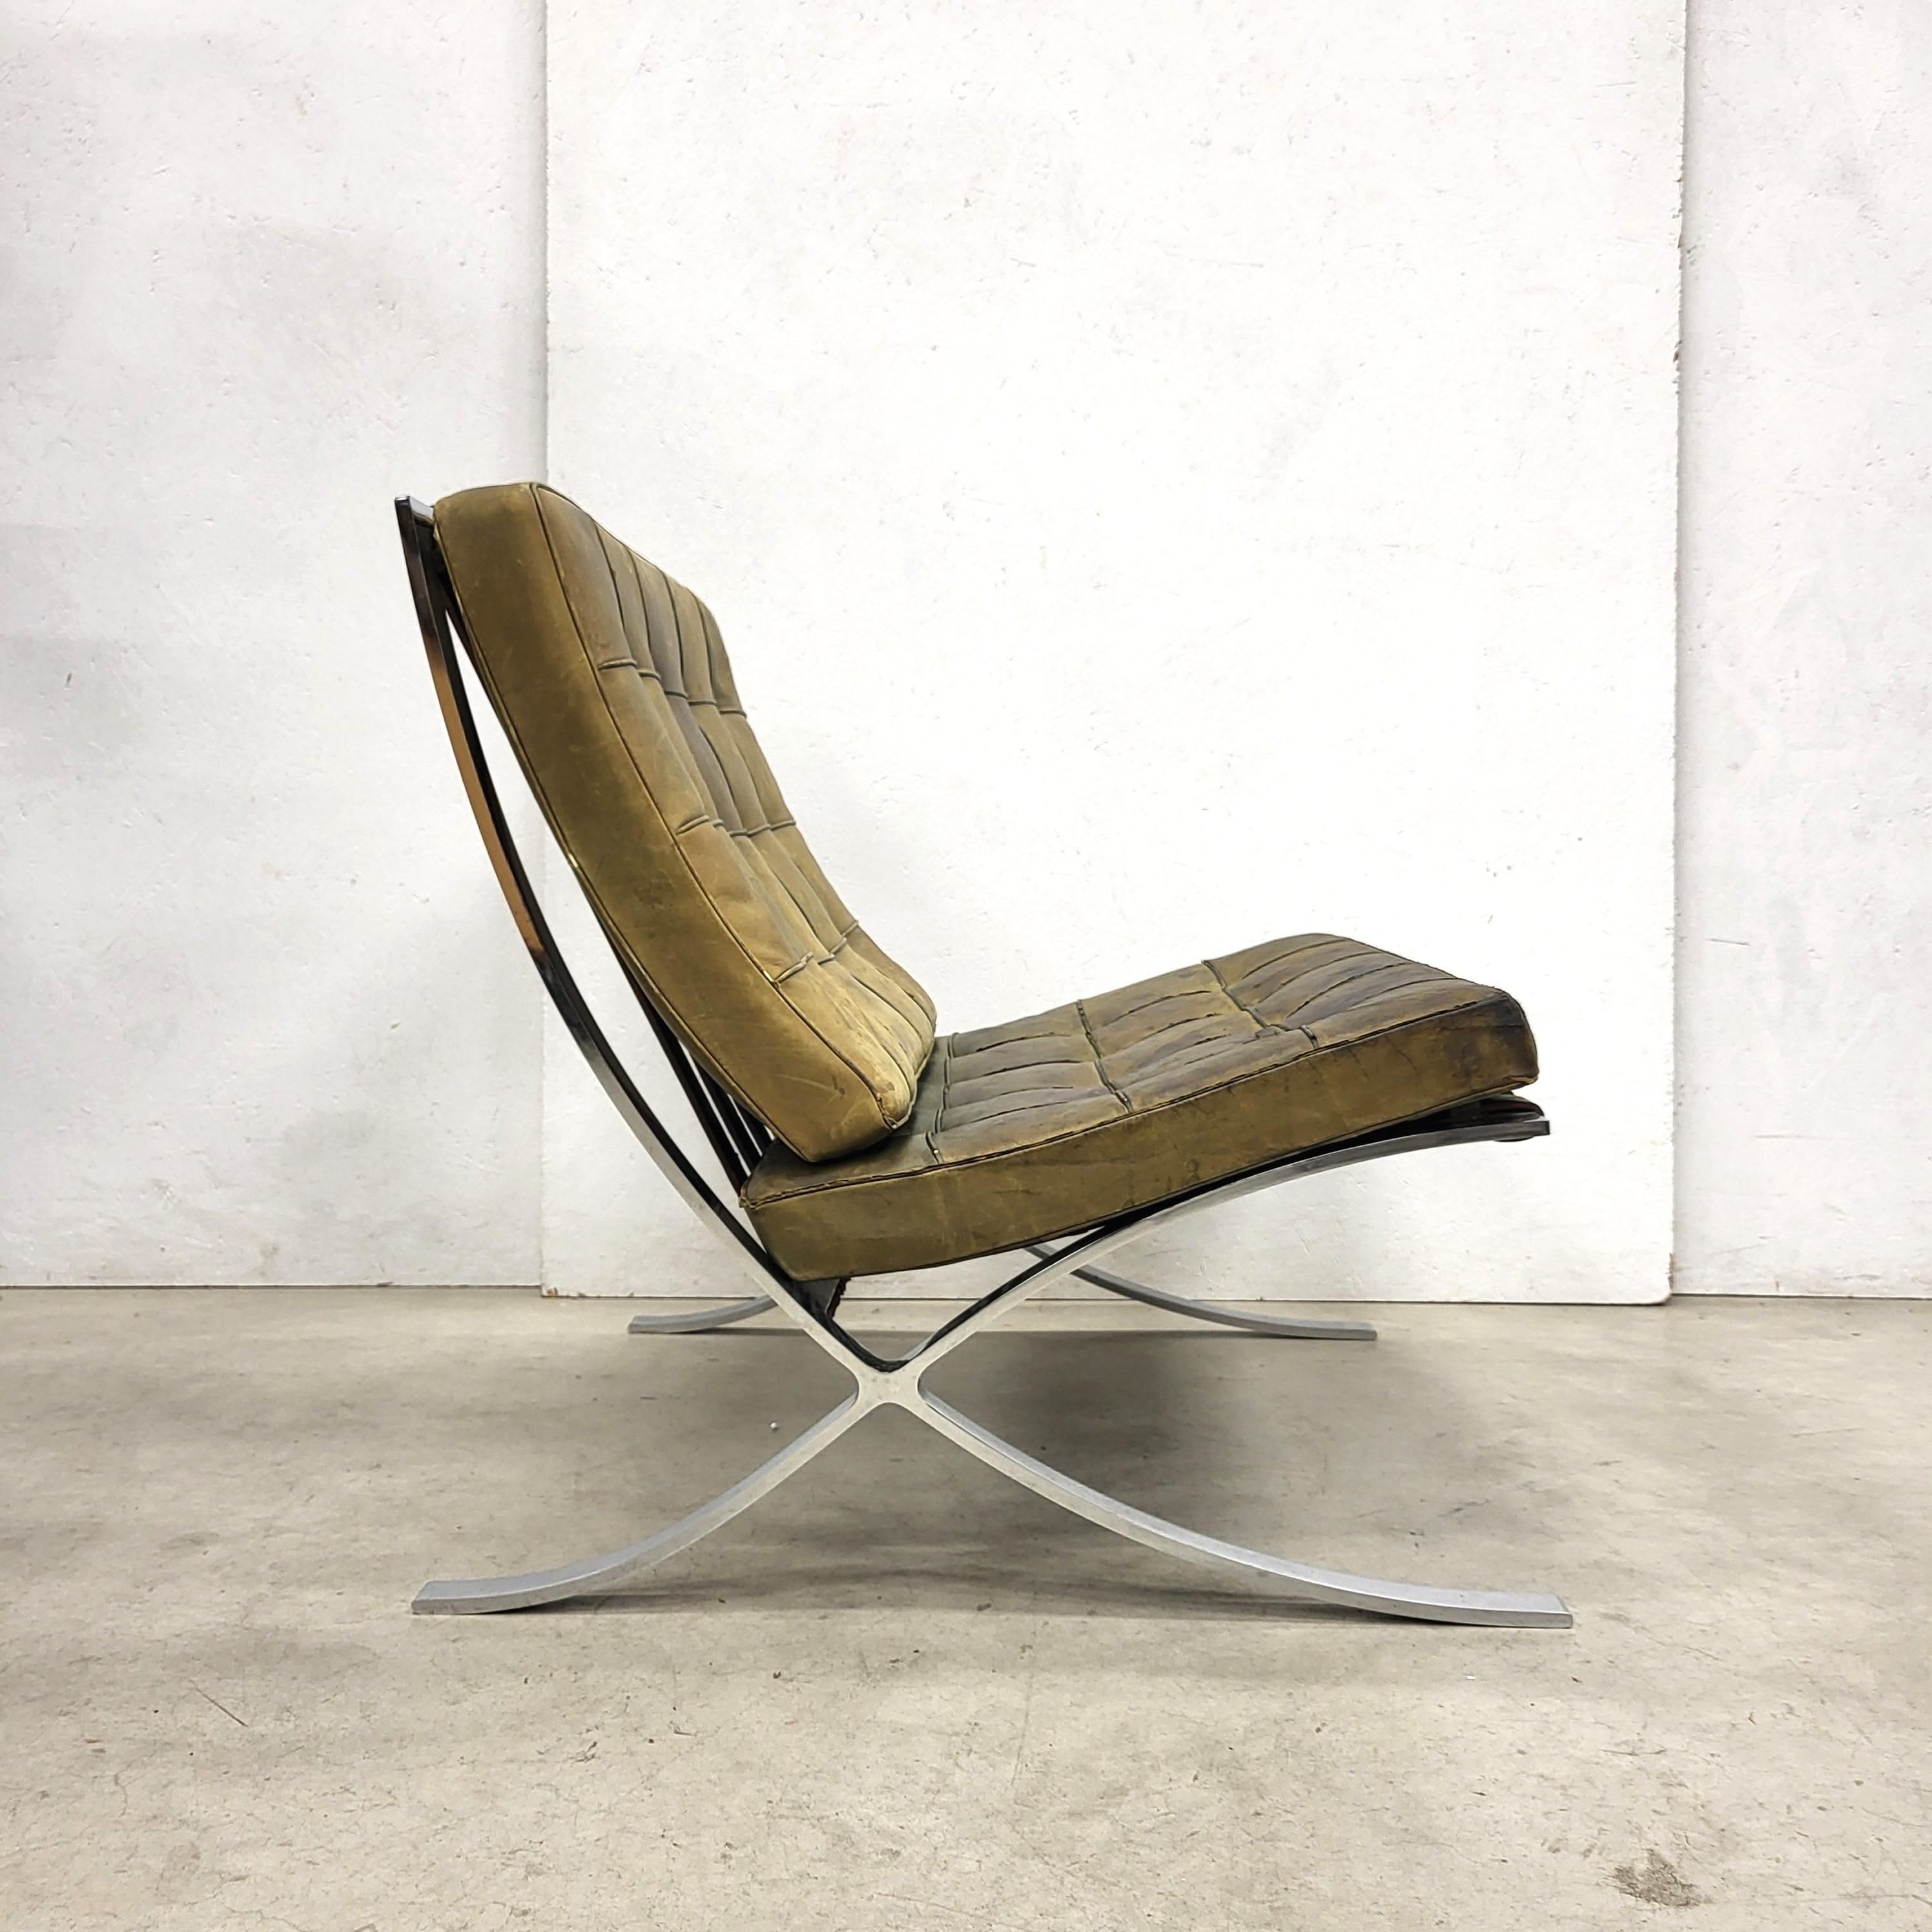 Cette rare chaise Barcelona a été conçue par Mies van der Rohe en 1929 et produite par Knoll International dans les années 1970. 

Le meuble est recouvert d'un cuir vert olive teinté à la main et repose sur une base en acier chromé. 

La chaise